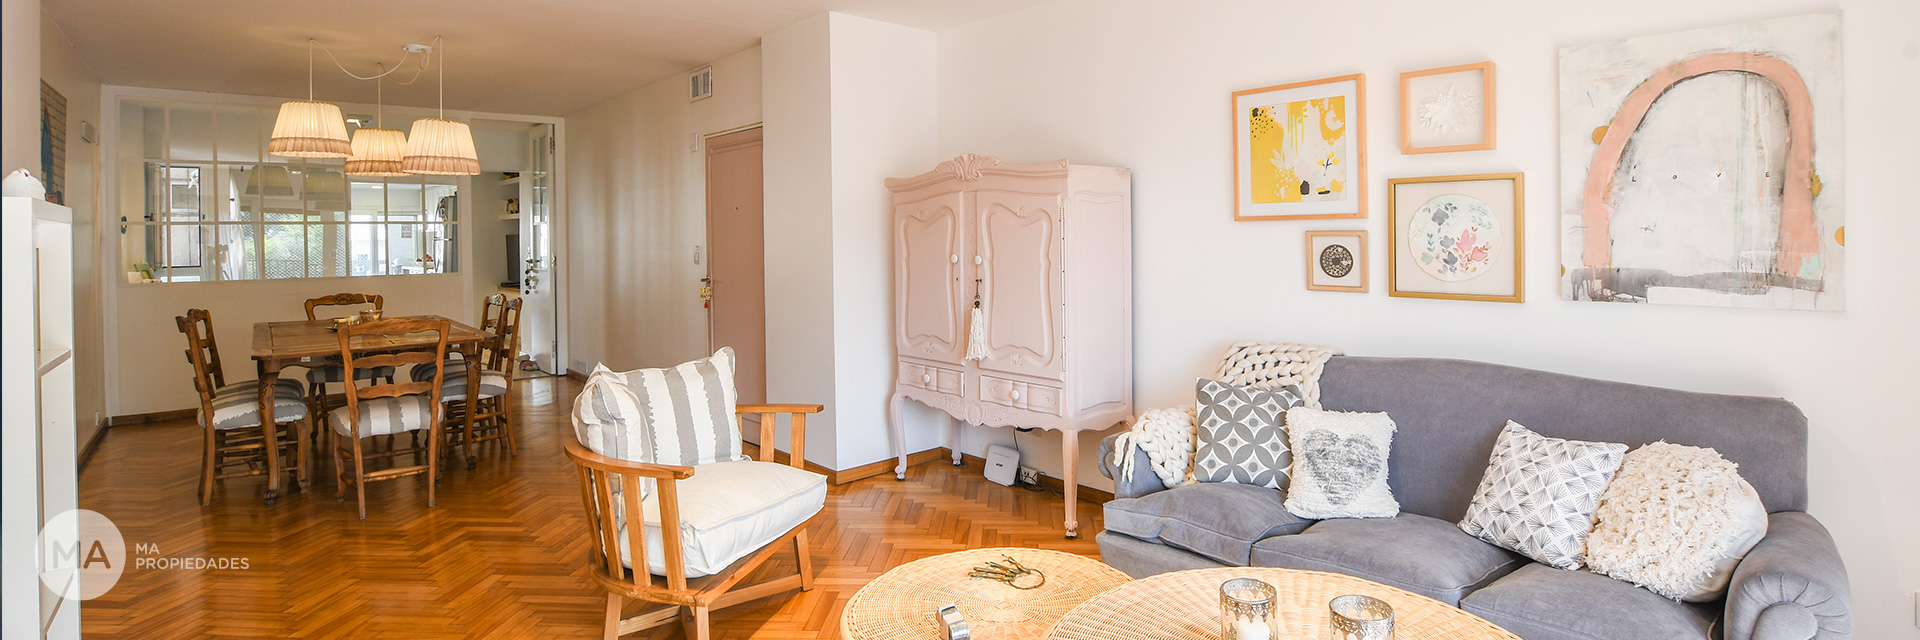 Importante piso exclusivo de 4 dormitorios y cochera sobre Av. Belgrano